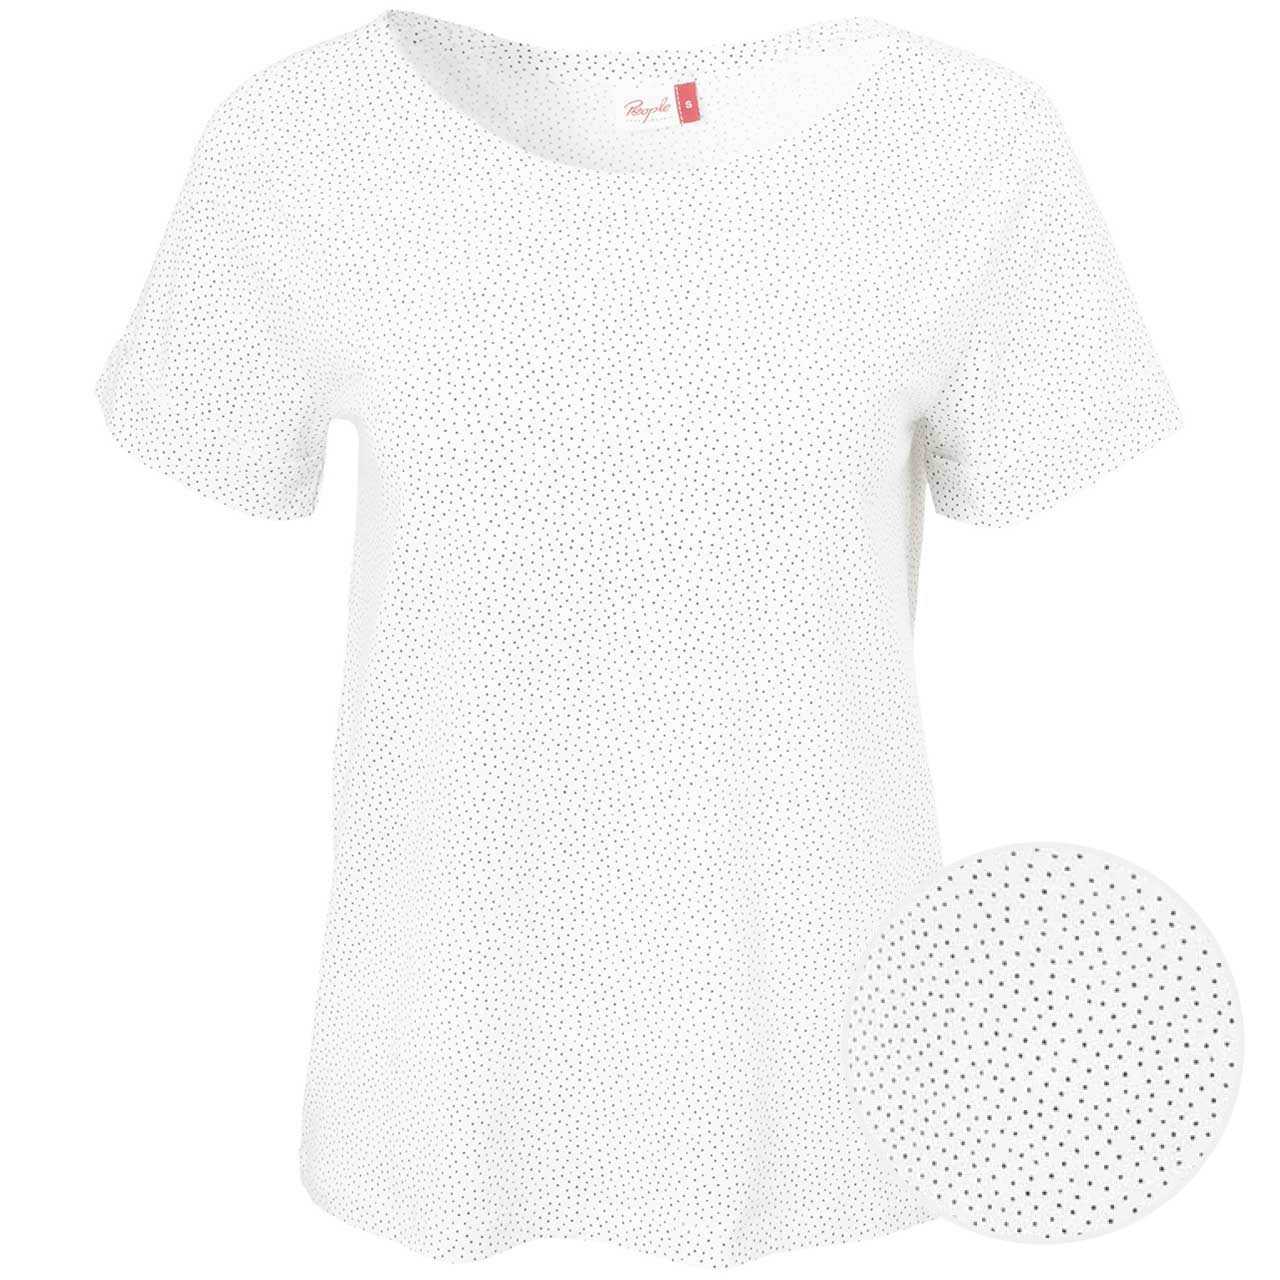 Elastisches Damen T-Shirt weiß gepunktet